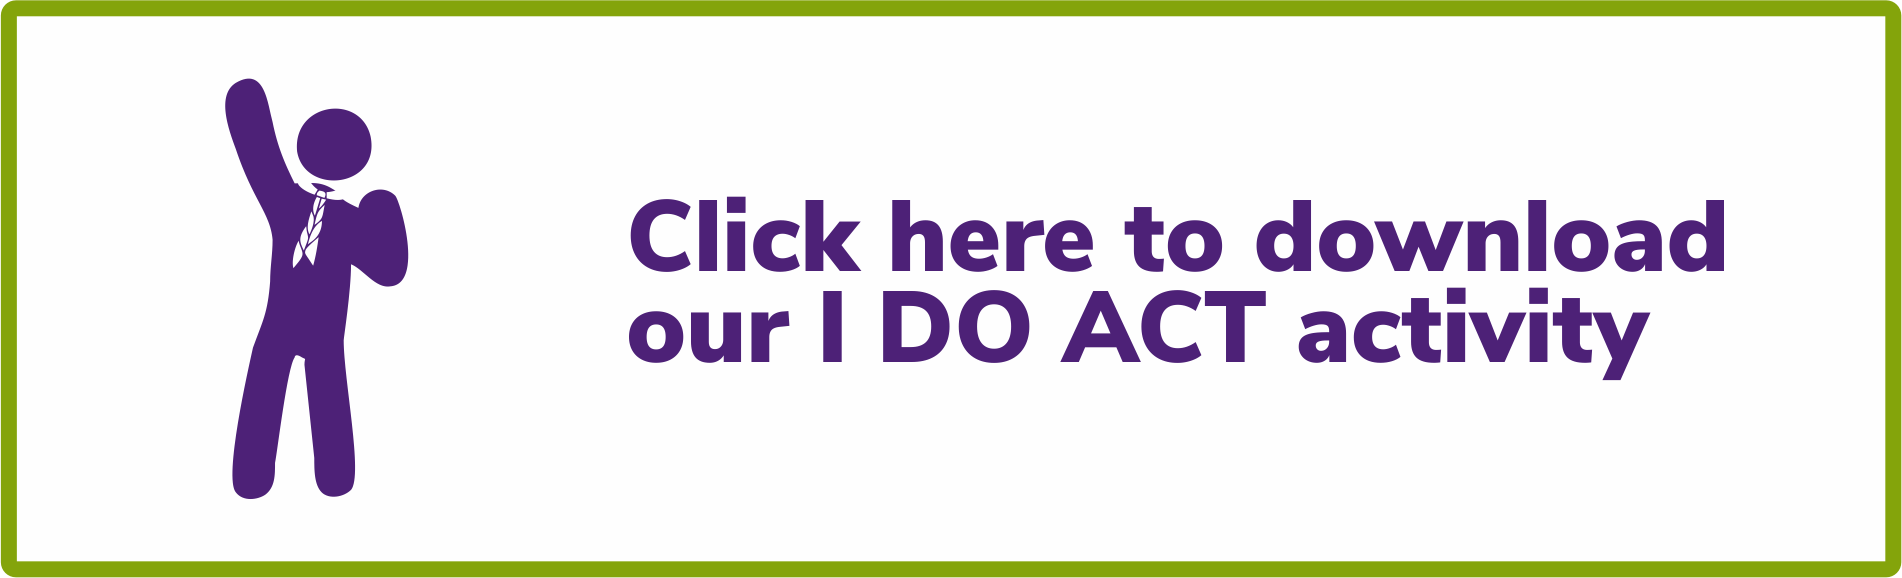 I DO ACT! activity button